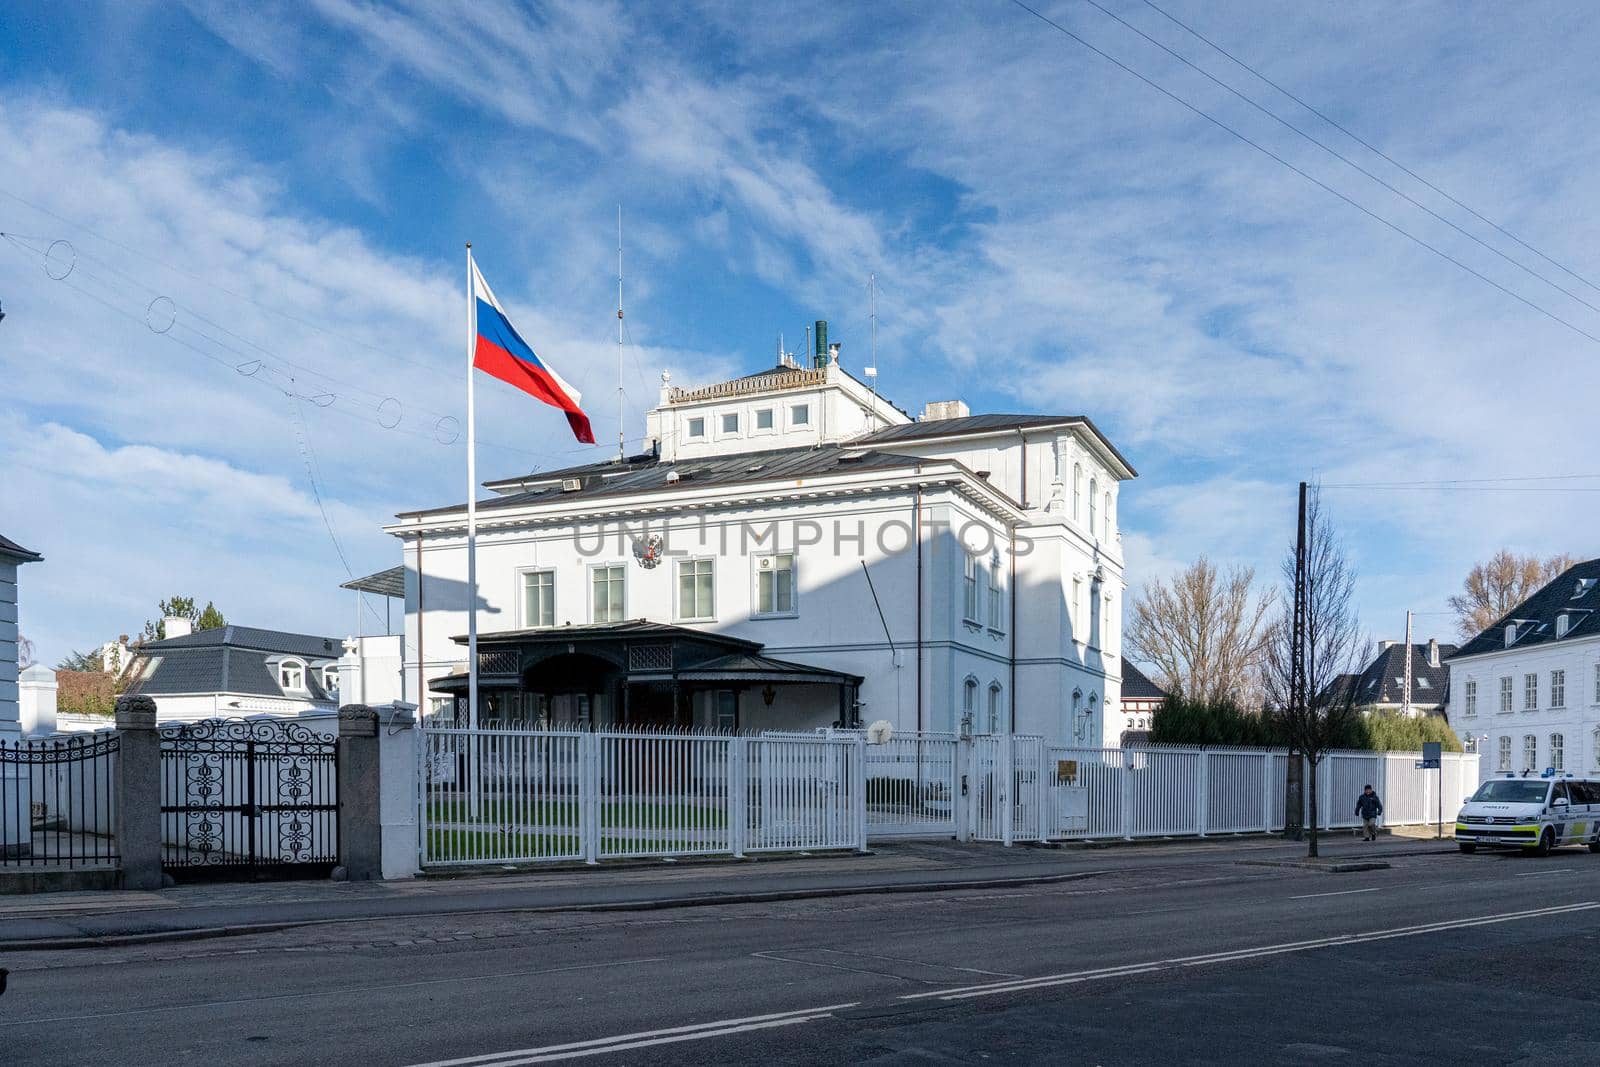 Embassy of Russia in Copenhagen, Denmark by oliverfoerstner